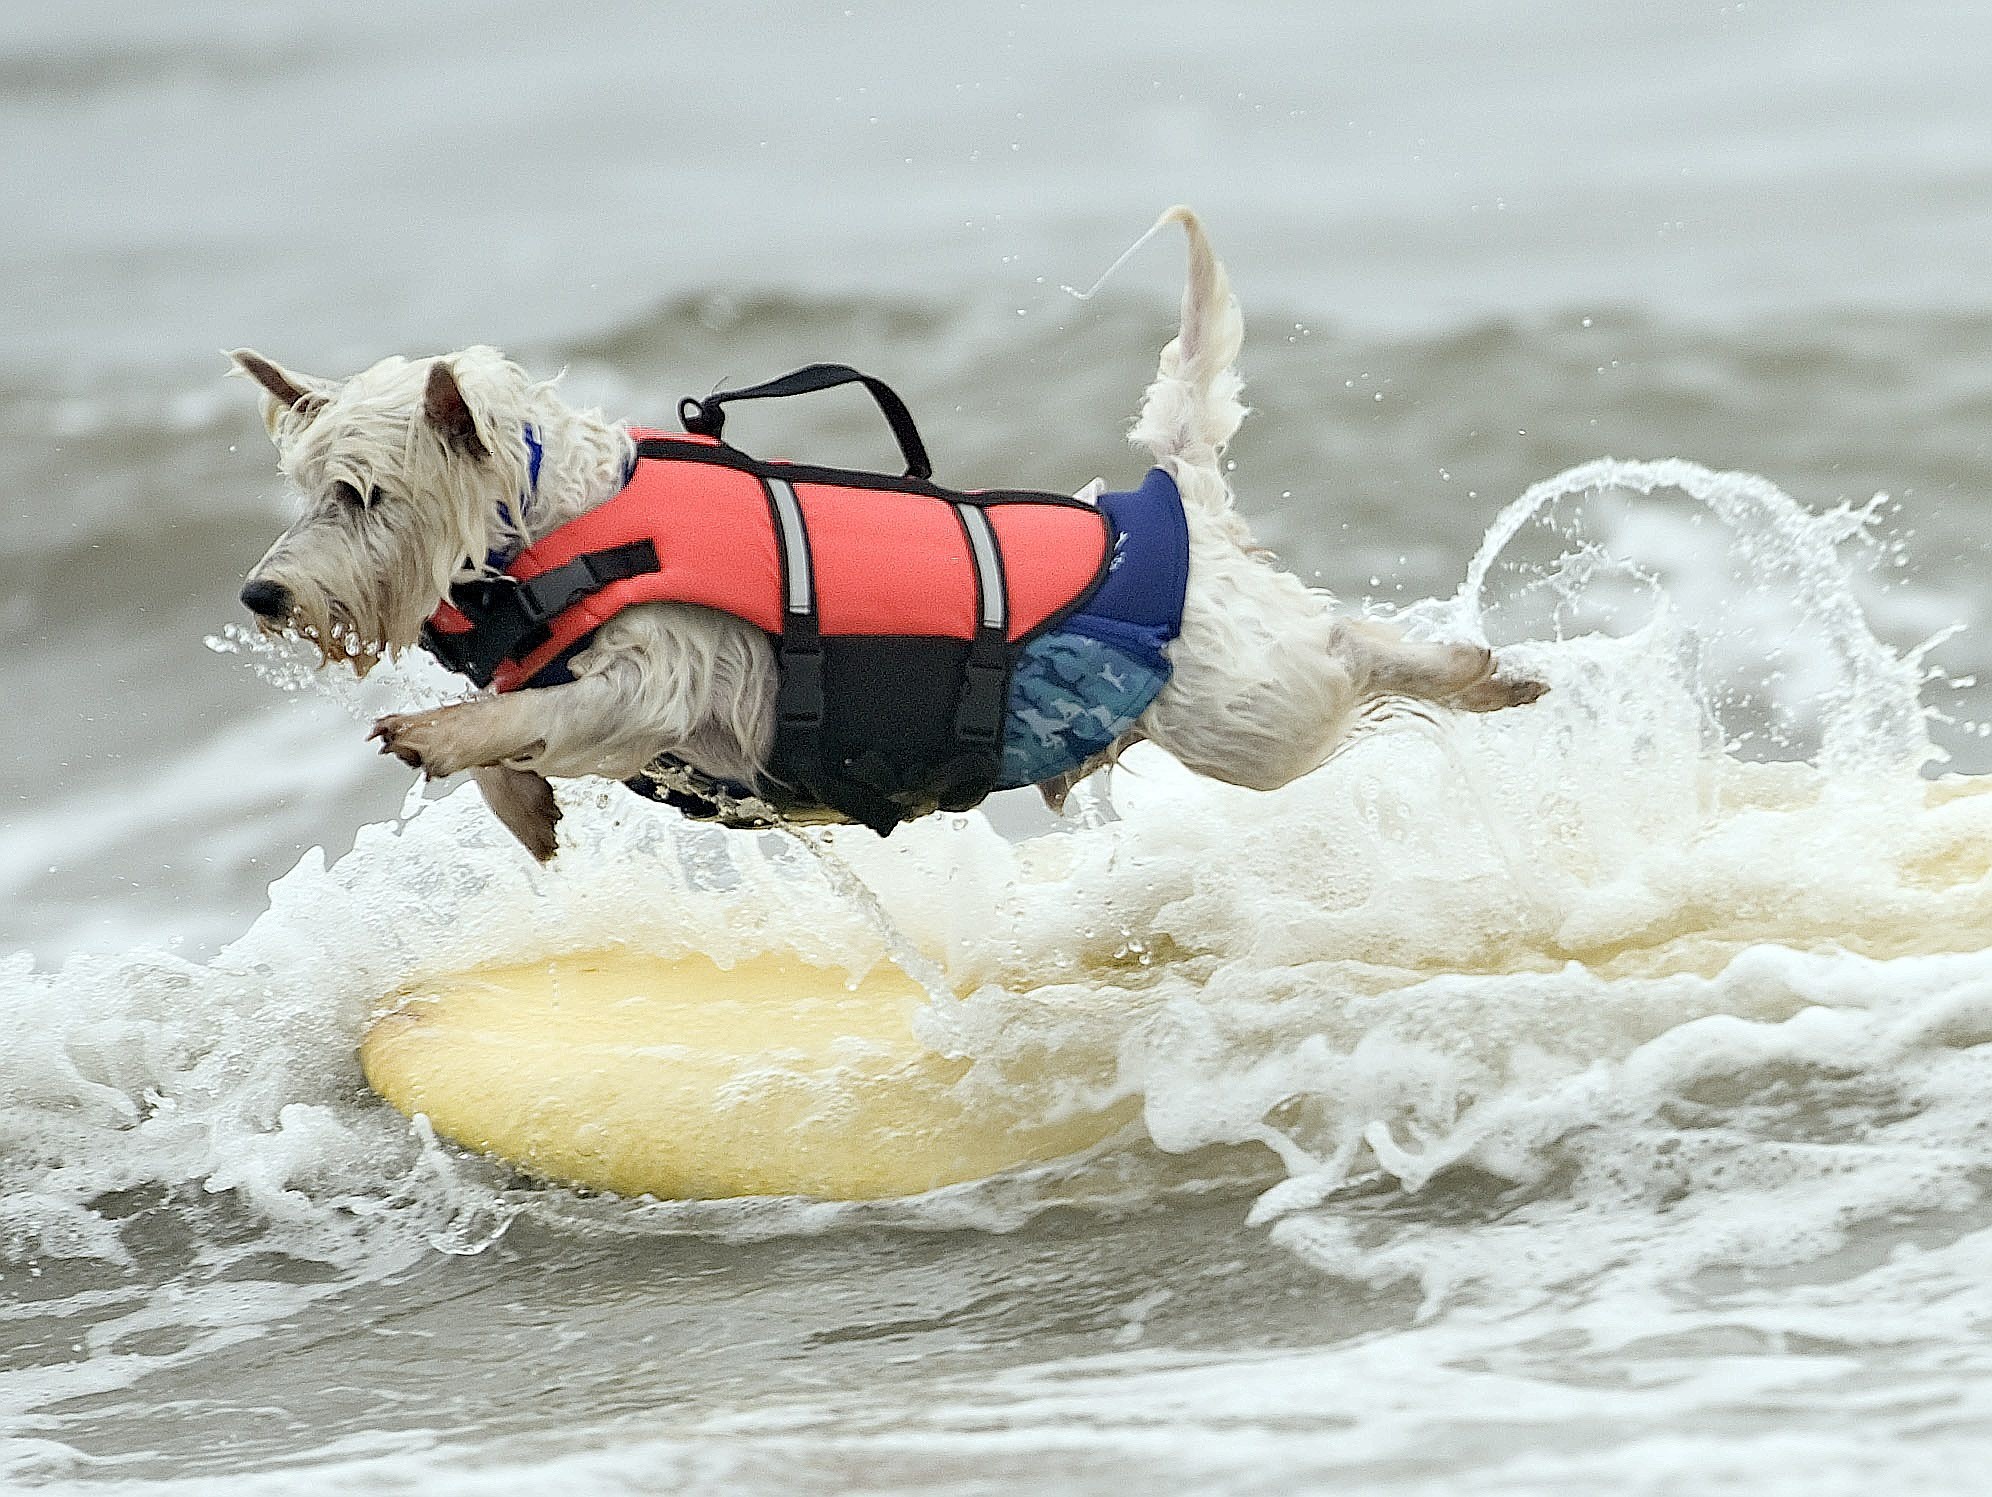 Joey, 7, ist zwar nicht in der Nähe des Strandes, aber der Westie hat trotzdem mehr Lust zu schwimmen als zu surfen.